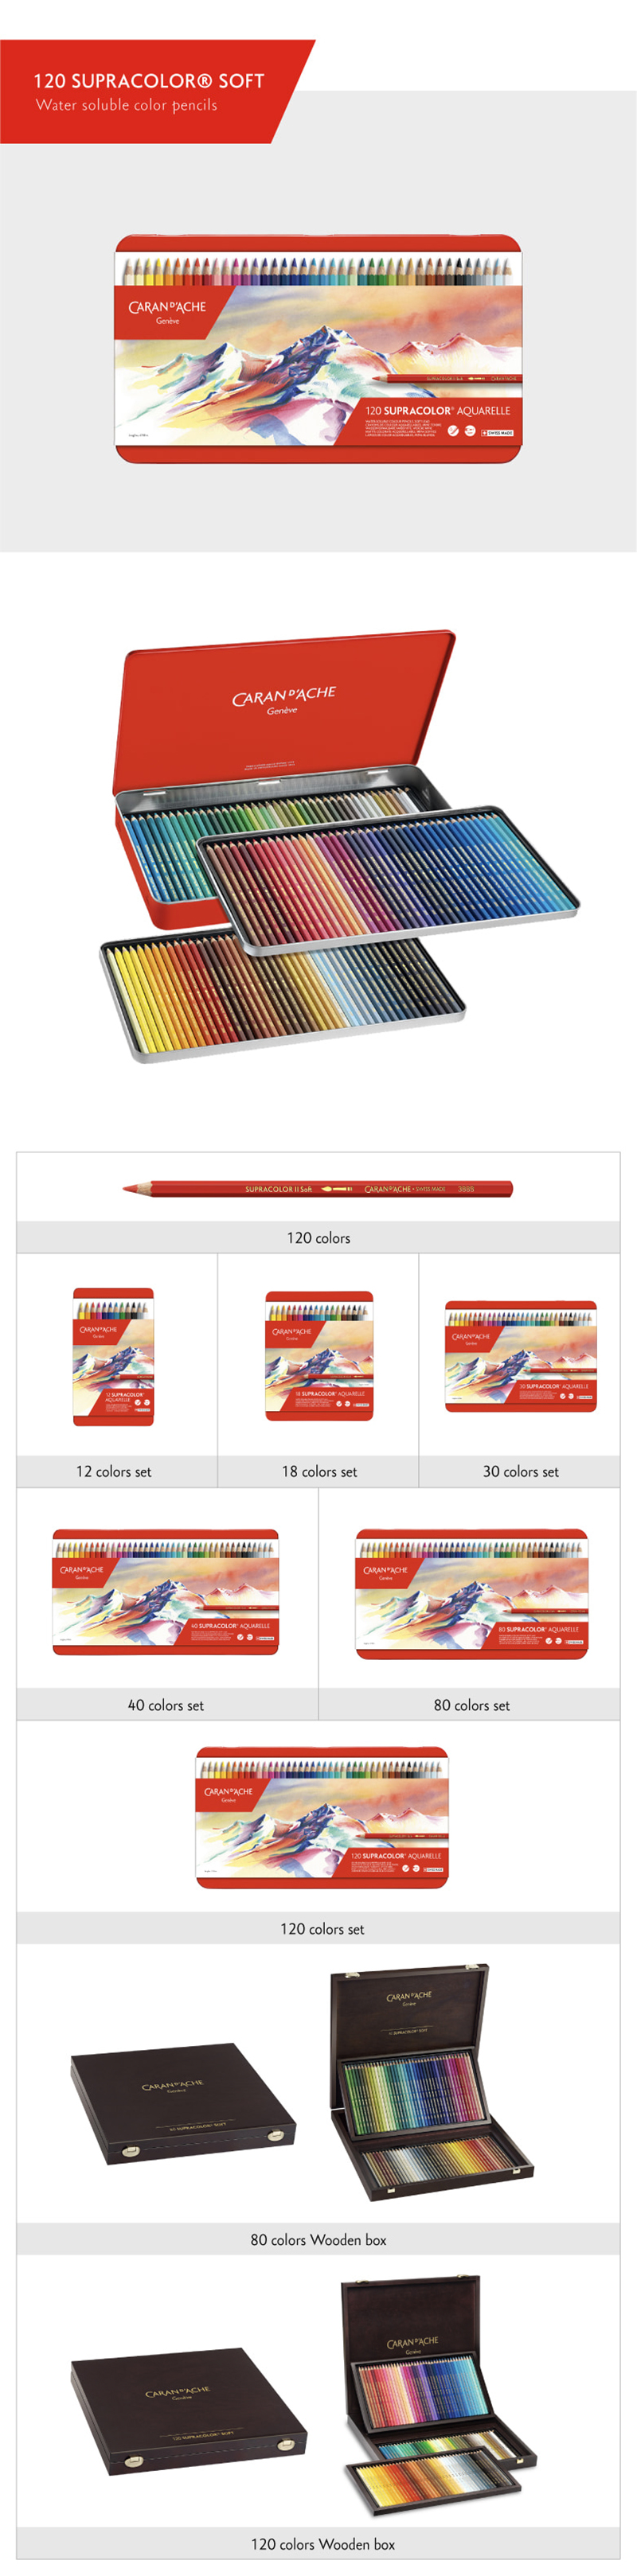 카렌다쉬 Supracolo 수성색연필 세트  30색, 40색, 80색, 120색